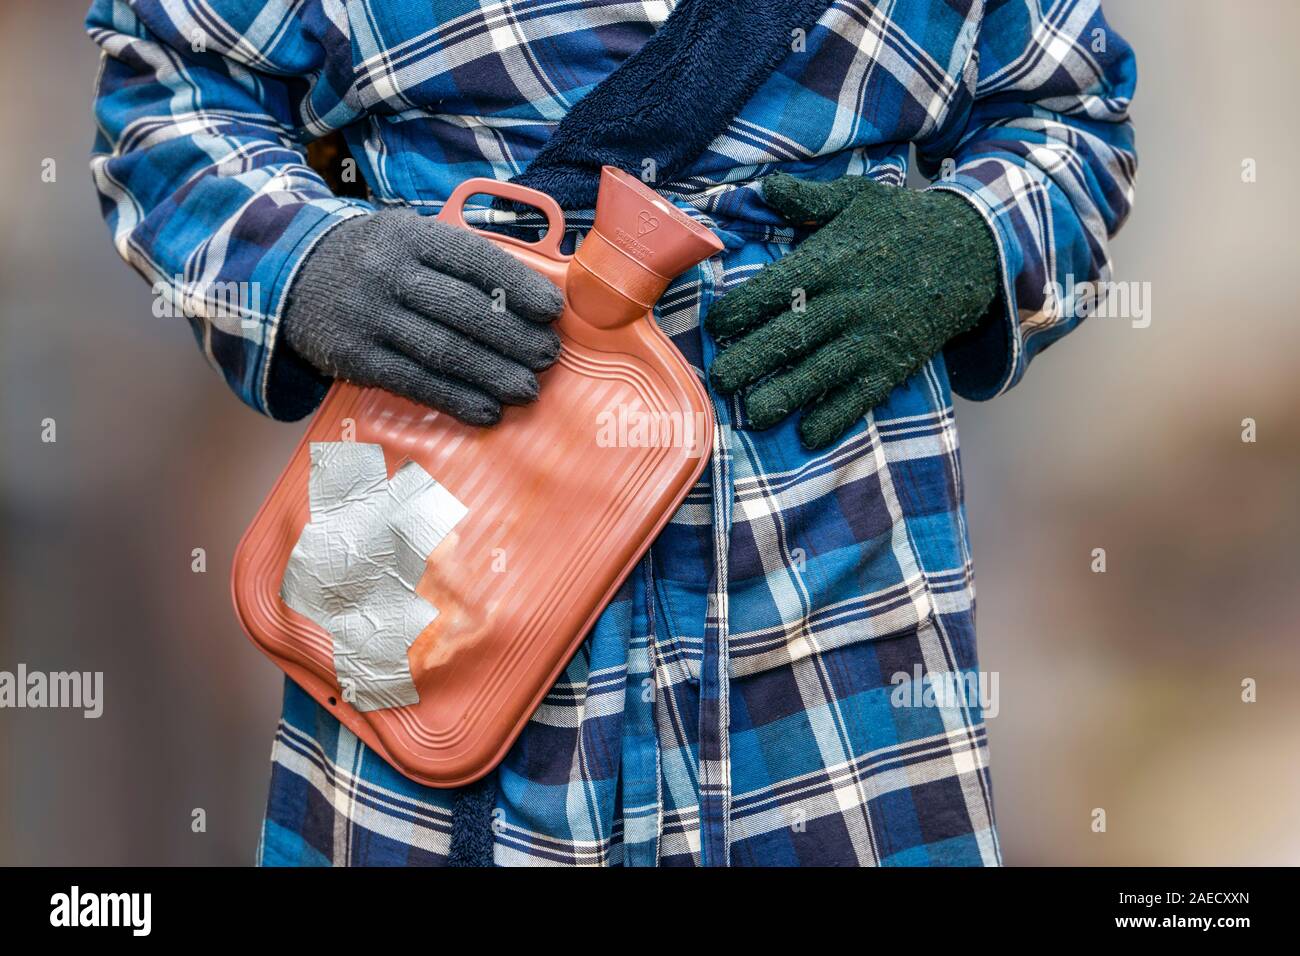 Pobreza de combustible: Un pensionista vulnerable vestido y guantes de lana desparejos intenta mantenerse caliente mientras las facturas de combustible y los costos de vida se disparan en el Reino Unido Foto de stock